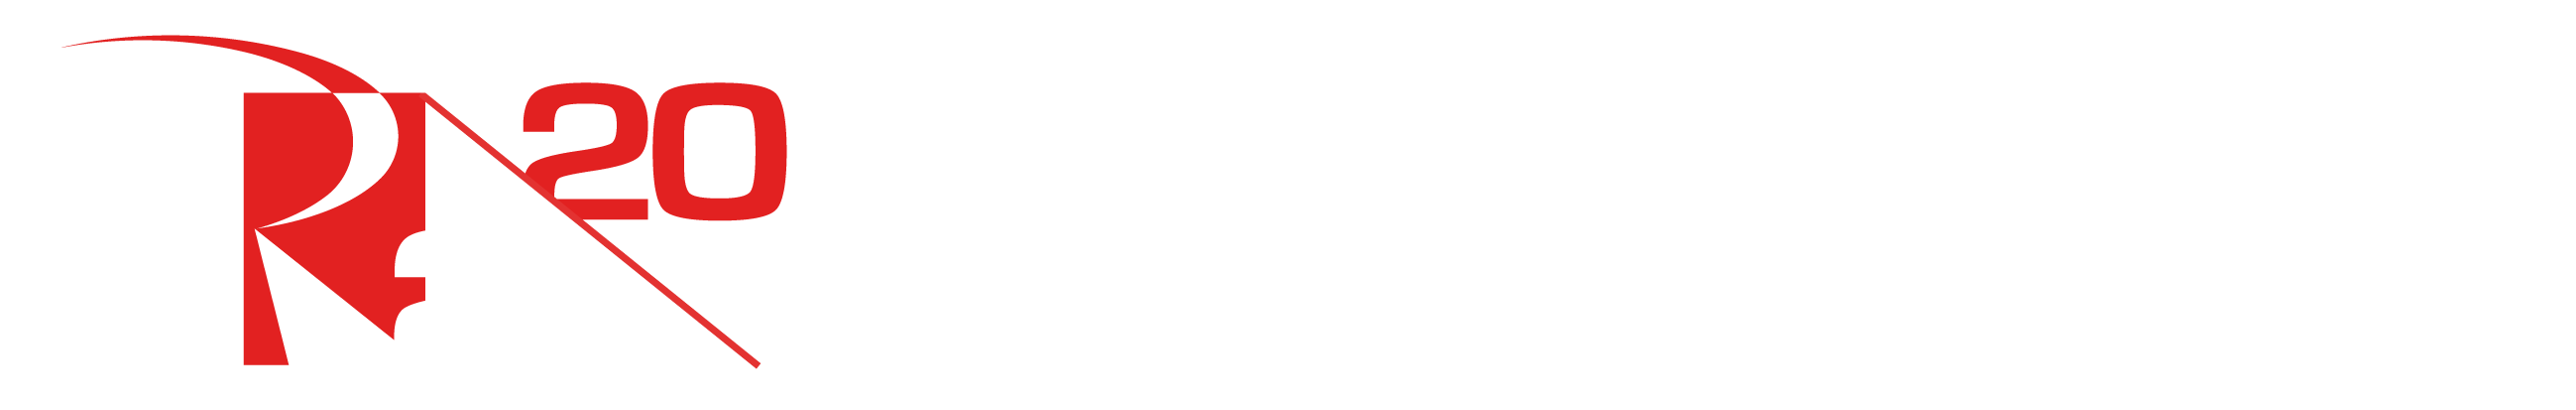 logo romani components 20 anni